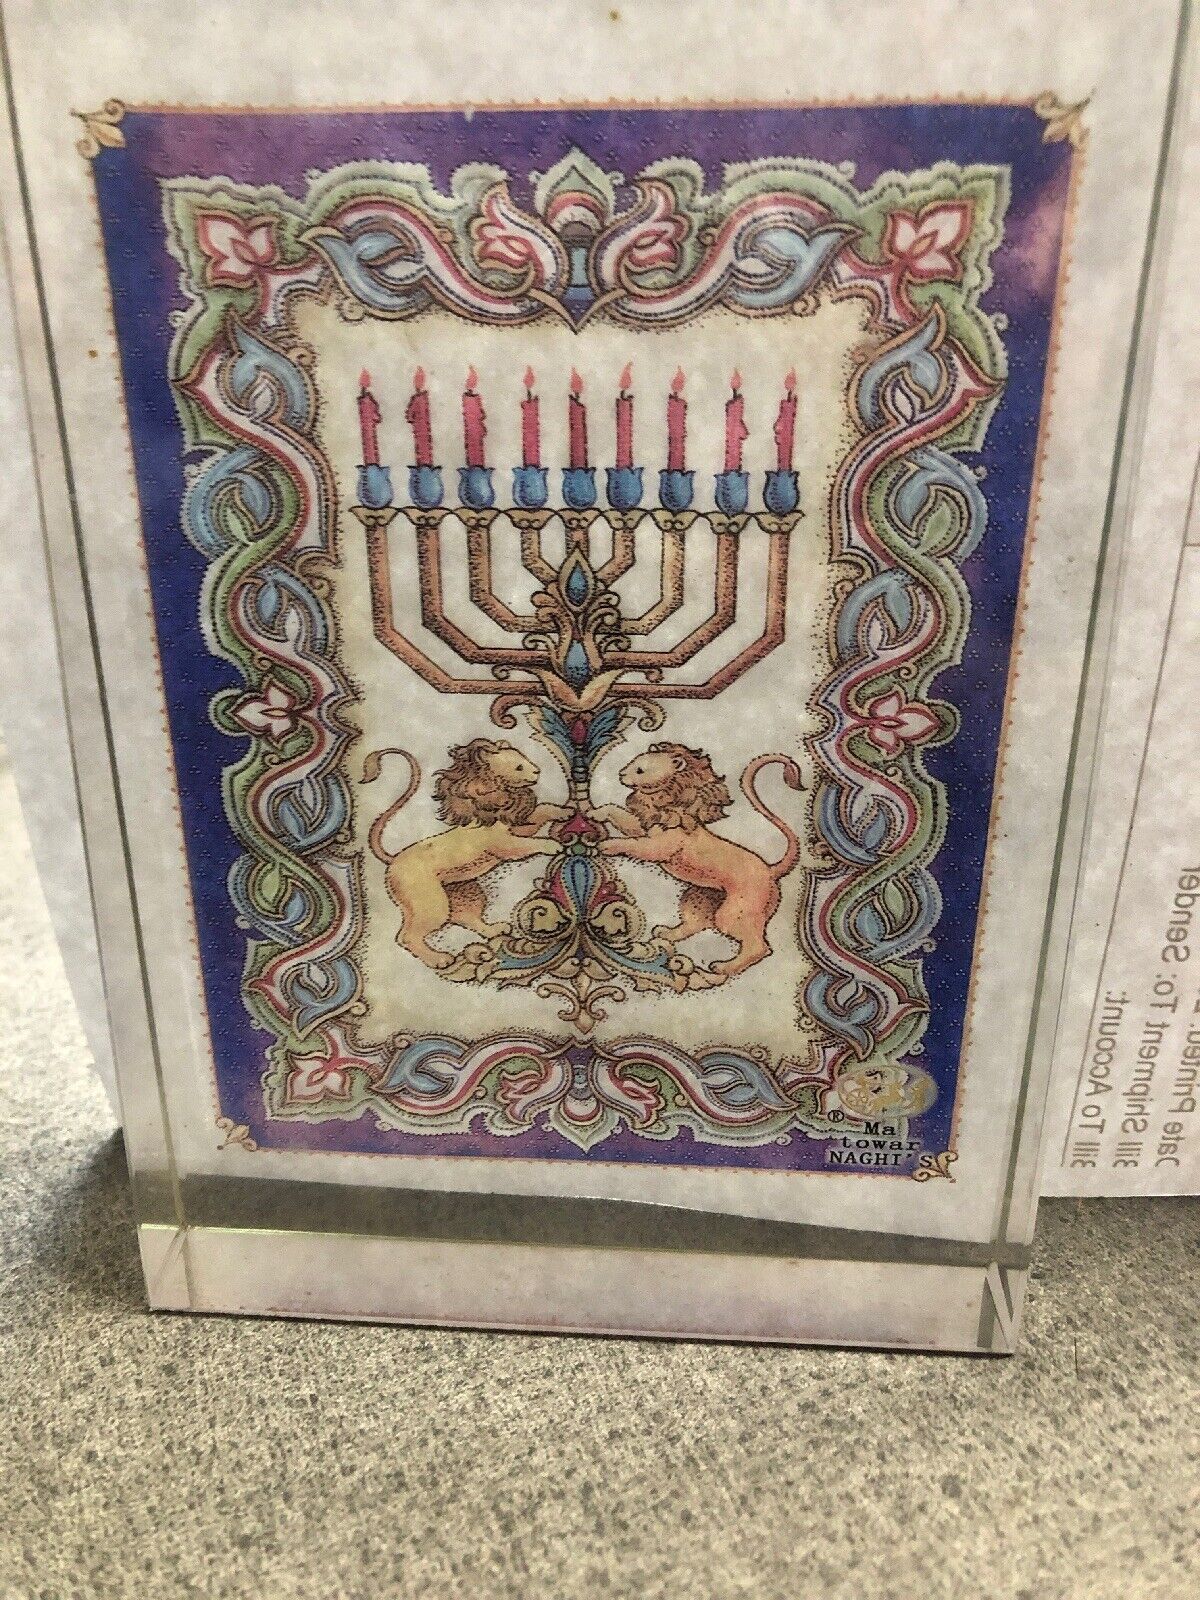 Hanukkah Tribe Judea Lead Crystal Keepsake Hand Made Antique 1980's Israel Art